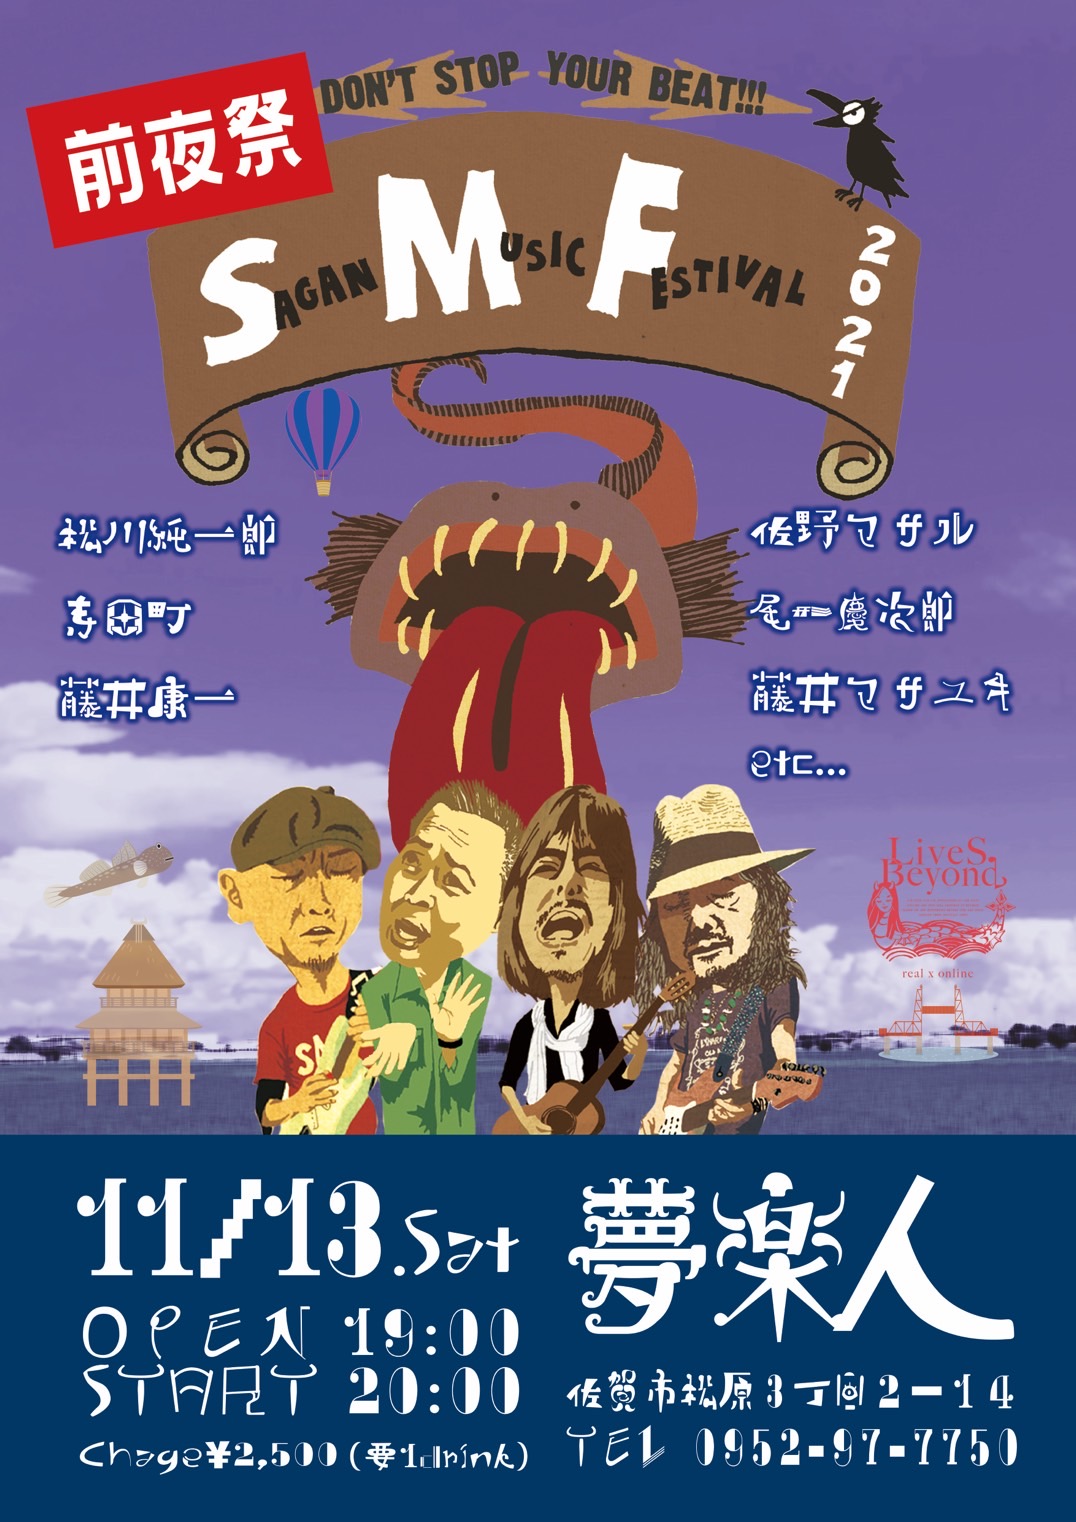 11/13(土) 19:00スタート「SMF前夜祭」